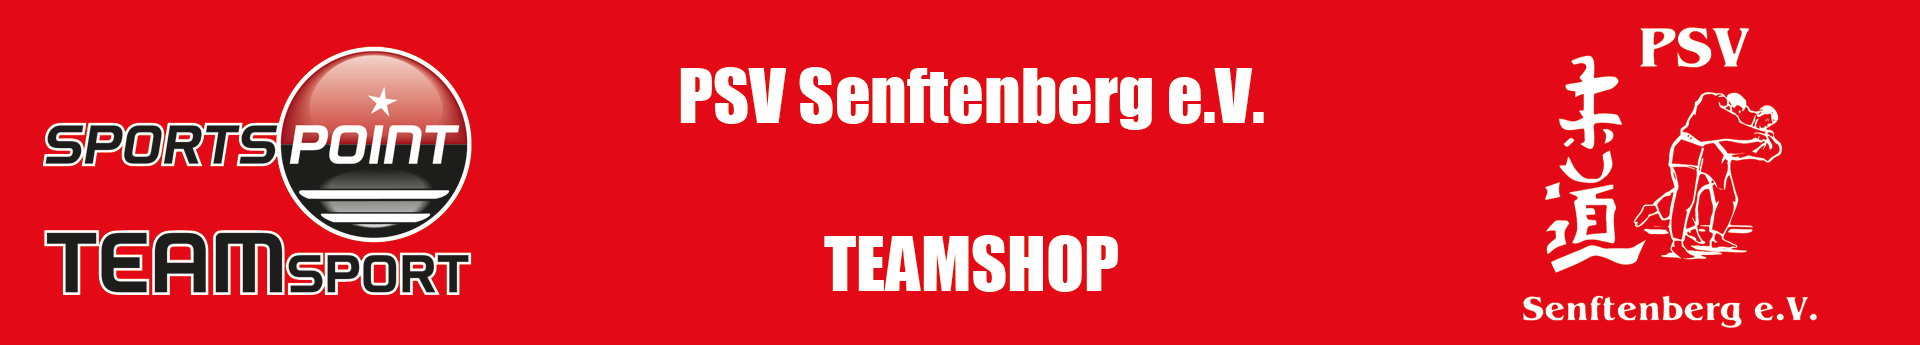 PSV Senftenberg Title Image